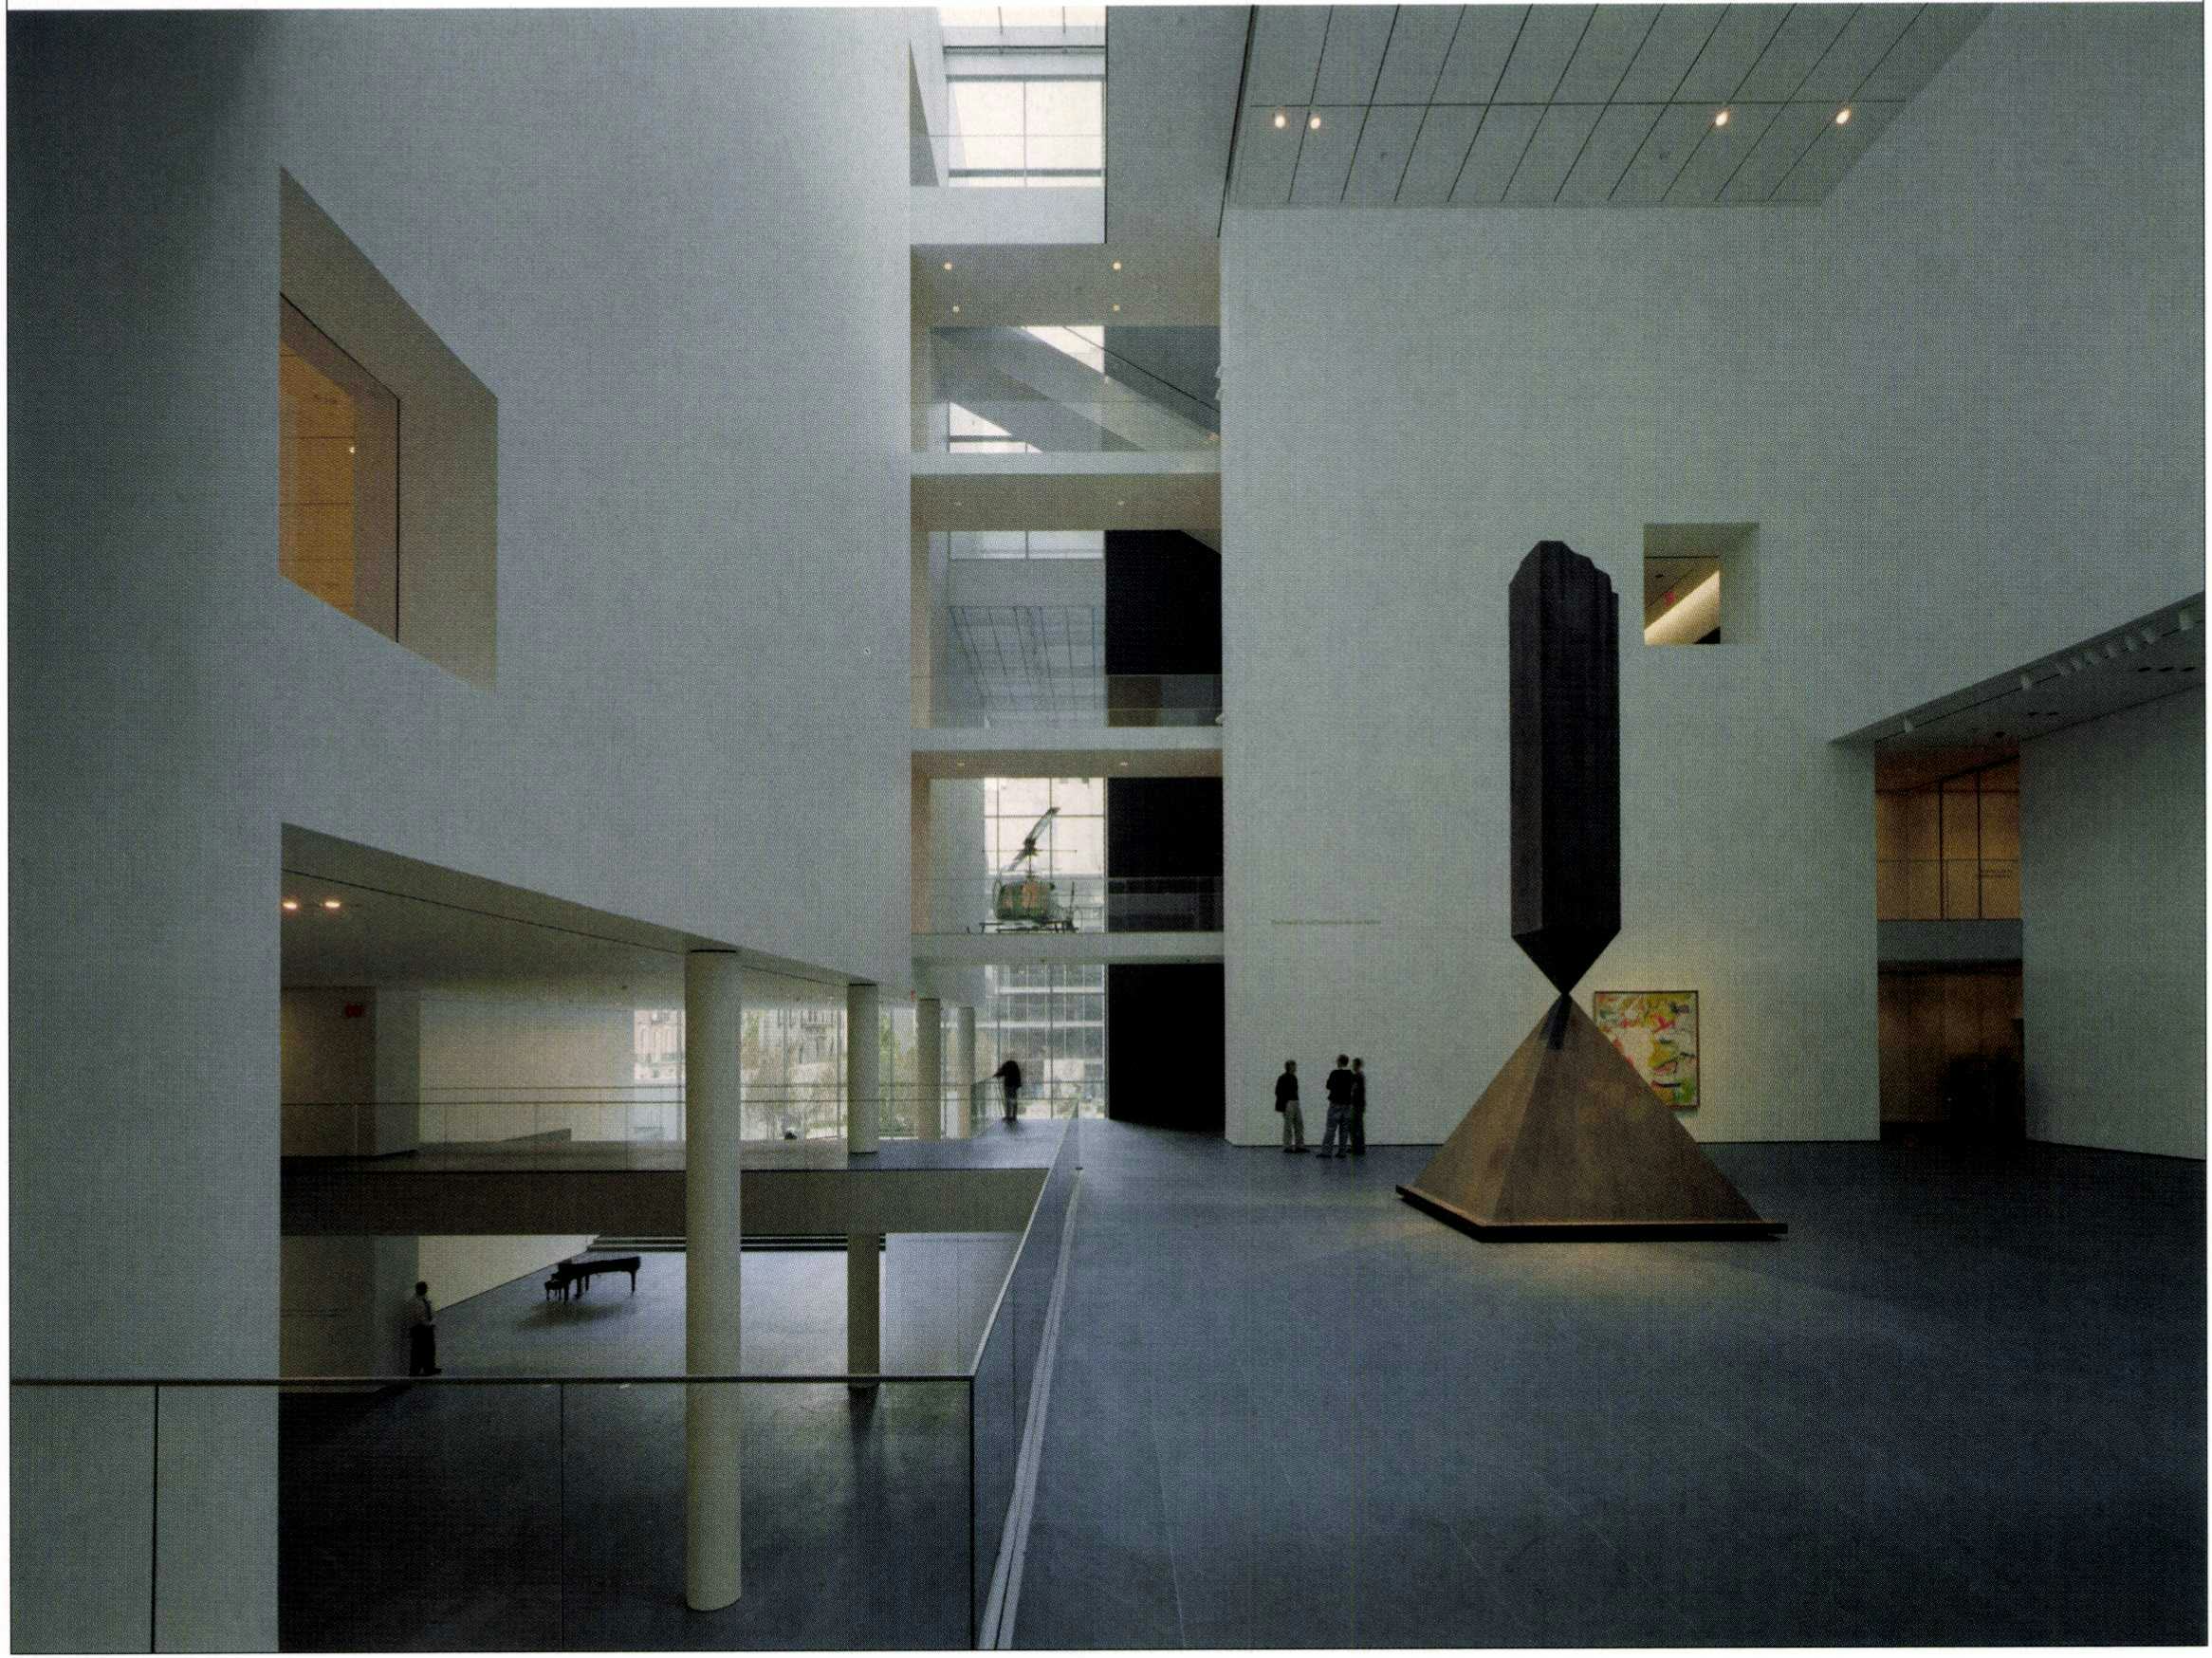 Het grote atrium, met daarin
Barnett Newmans ‘Broken
Obelisk’. Achterin is een glimp
van de beeldentuin zichtbaar -  Beeld Timothy Hursley